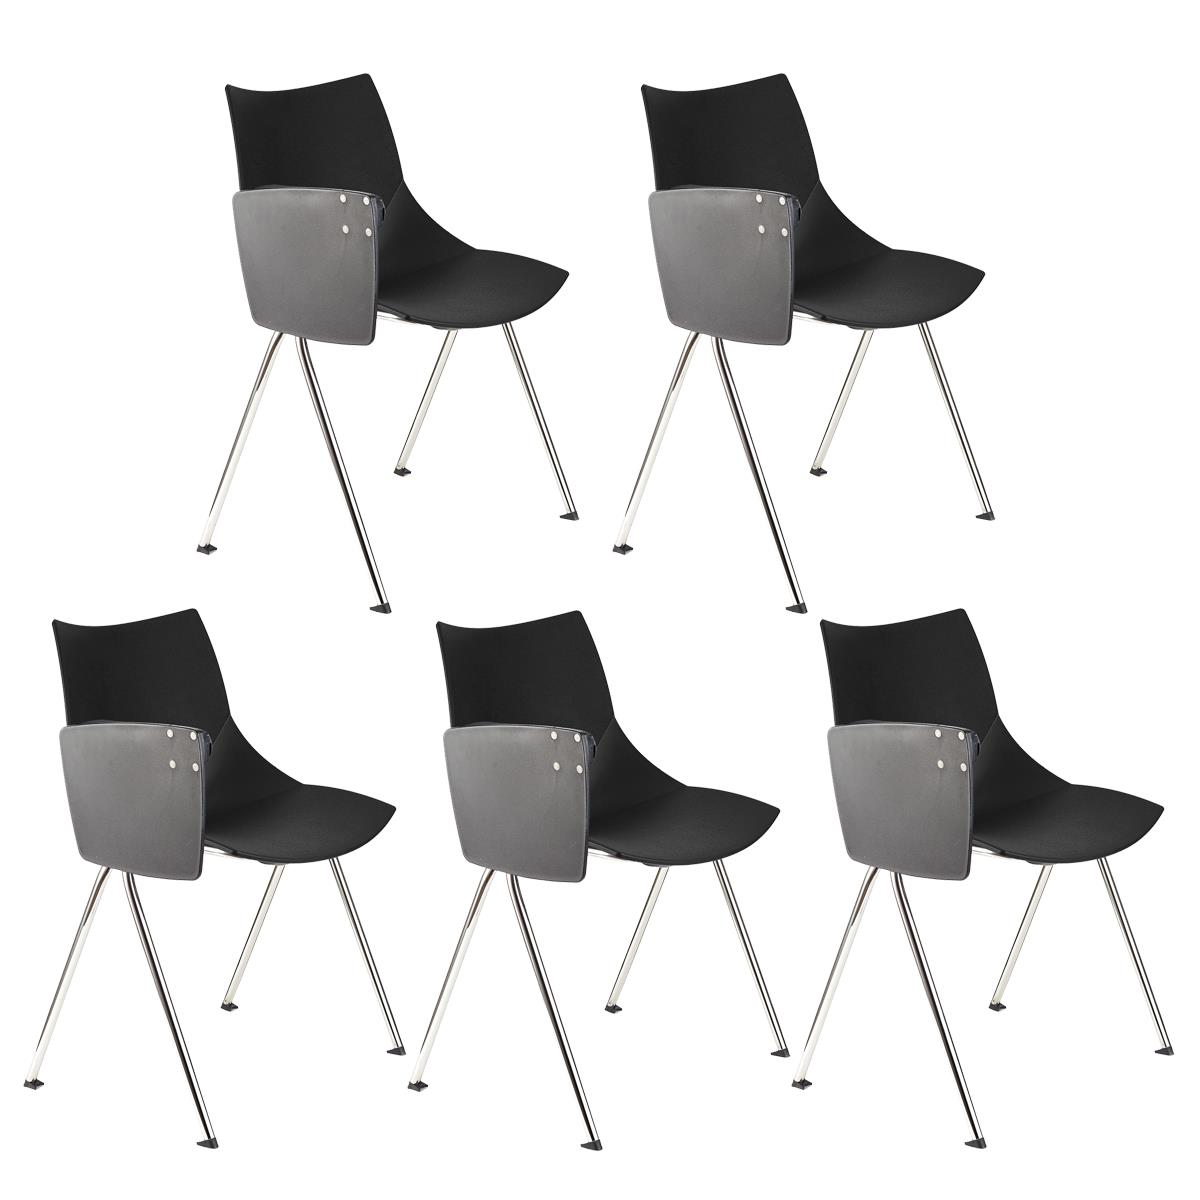 Lote de 5 sillas de Confidente AMIR CON PALA, Cómodas y Prácticas, Color Negro